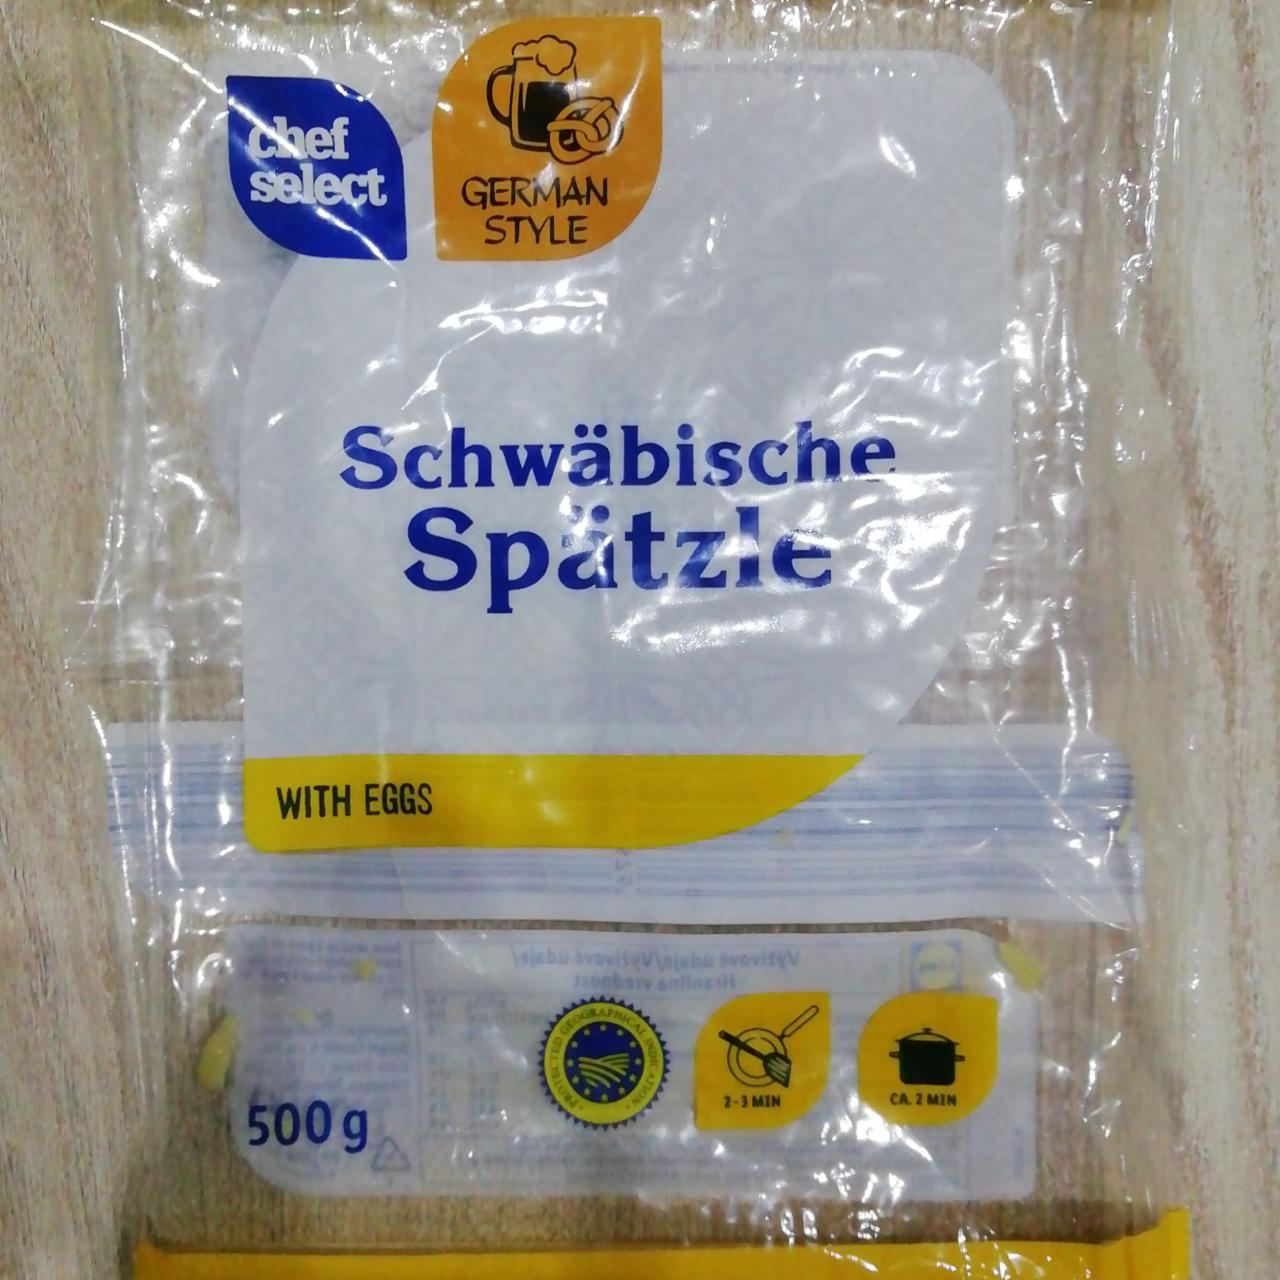 Fotografie - Chef Select Schwabische Spatzle